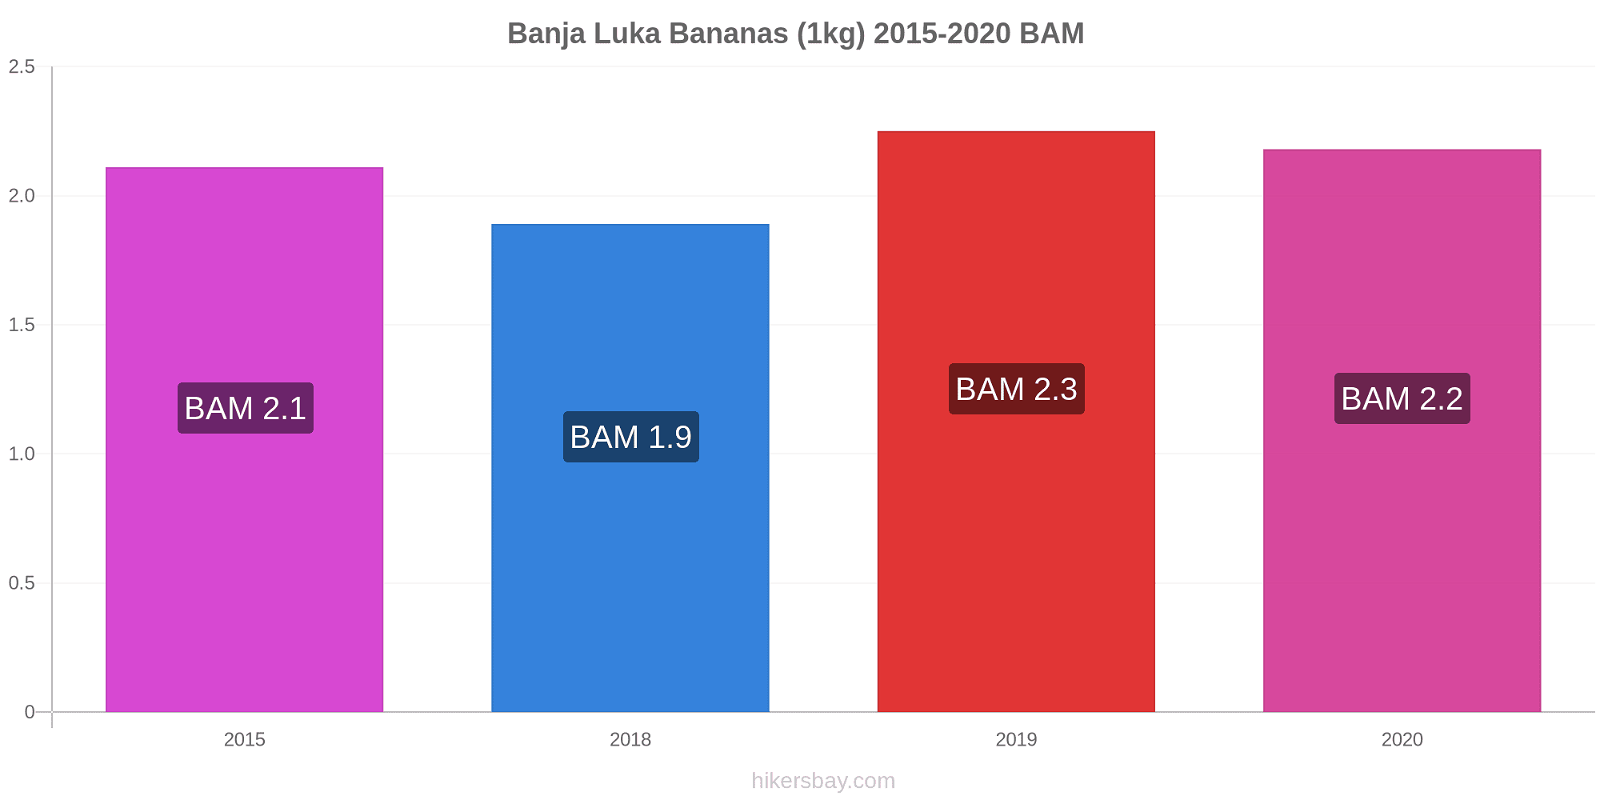 Banja Luka price changes Bananas (1kg) hikersbay.com